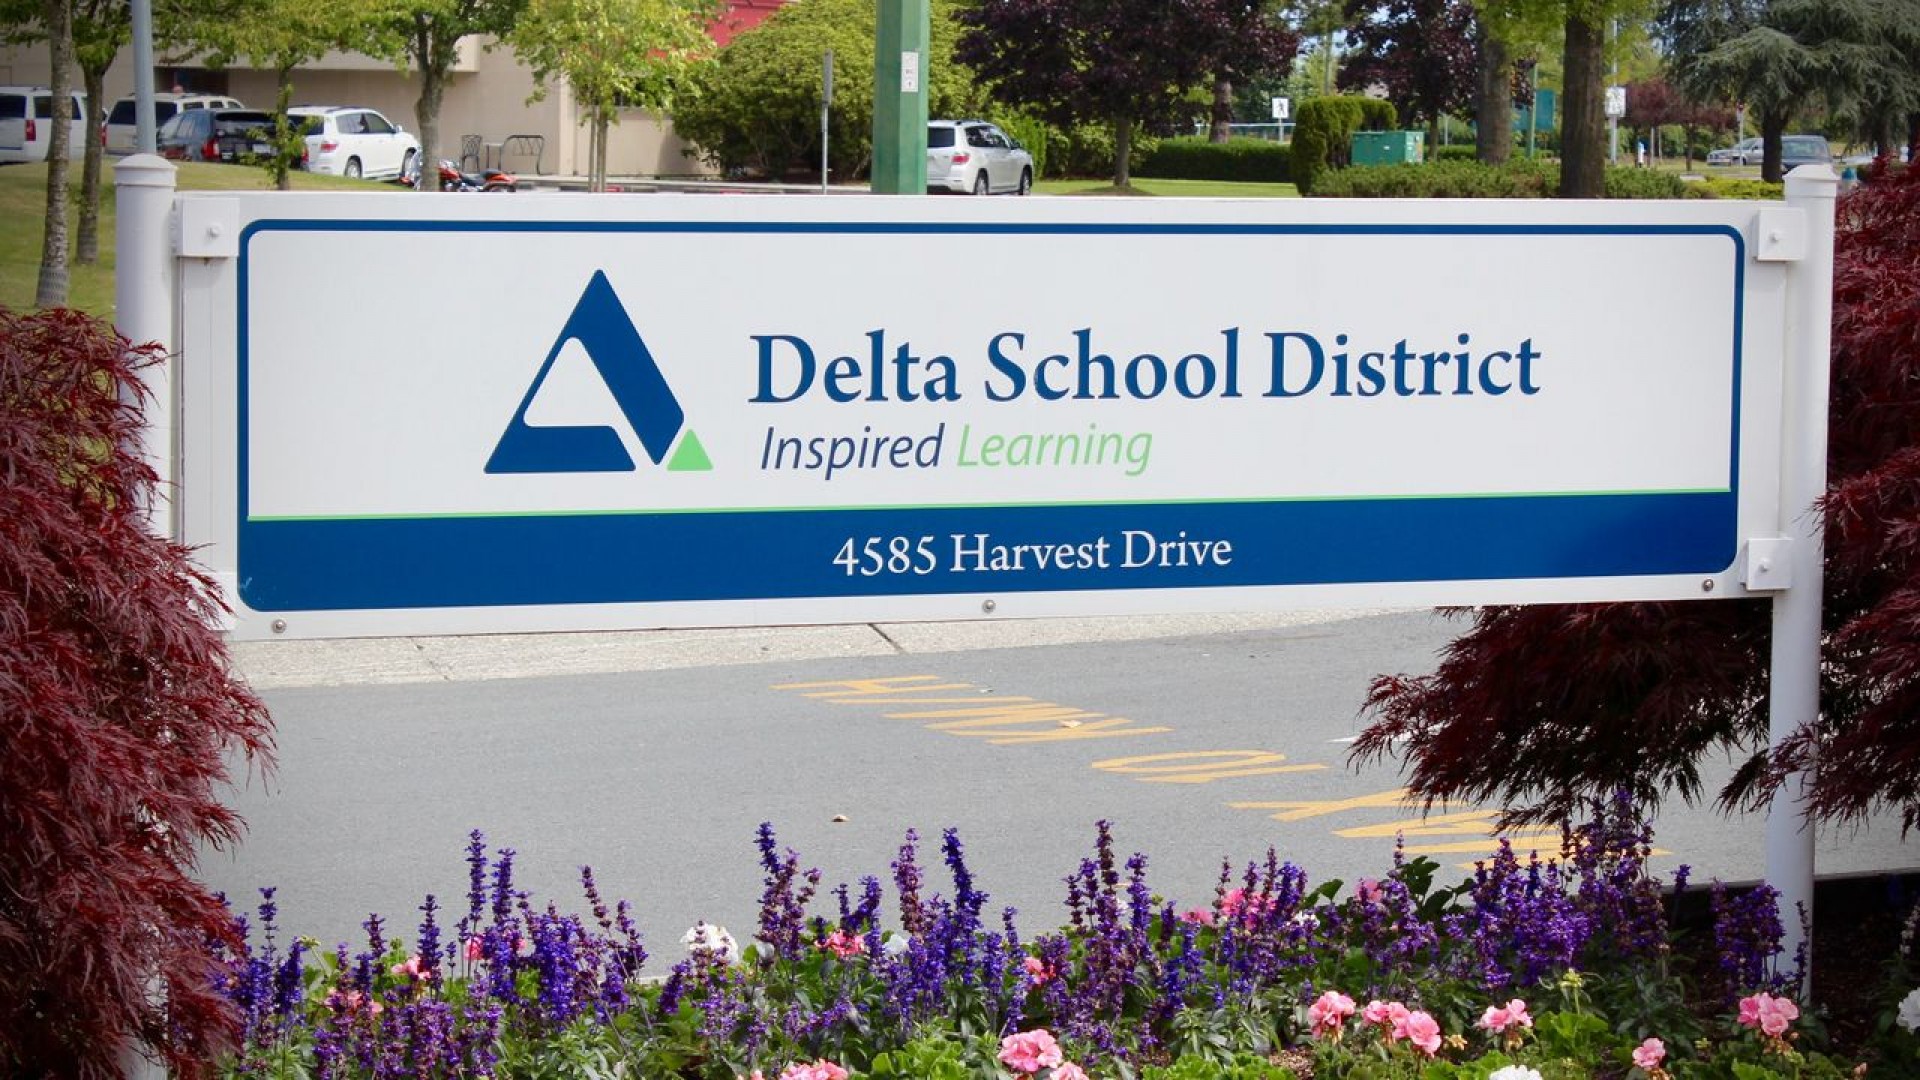 Delta School District – Lựa chọn xứng đáng khi bạn muốn du học THPT tại Canada